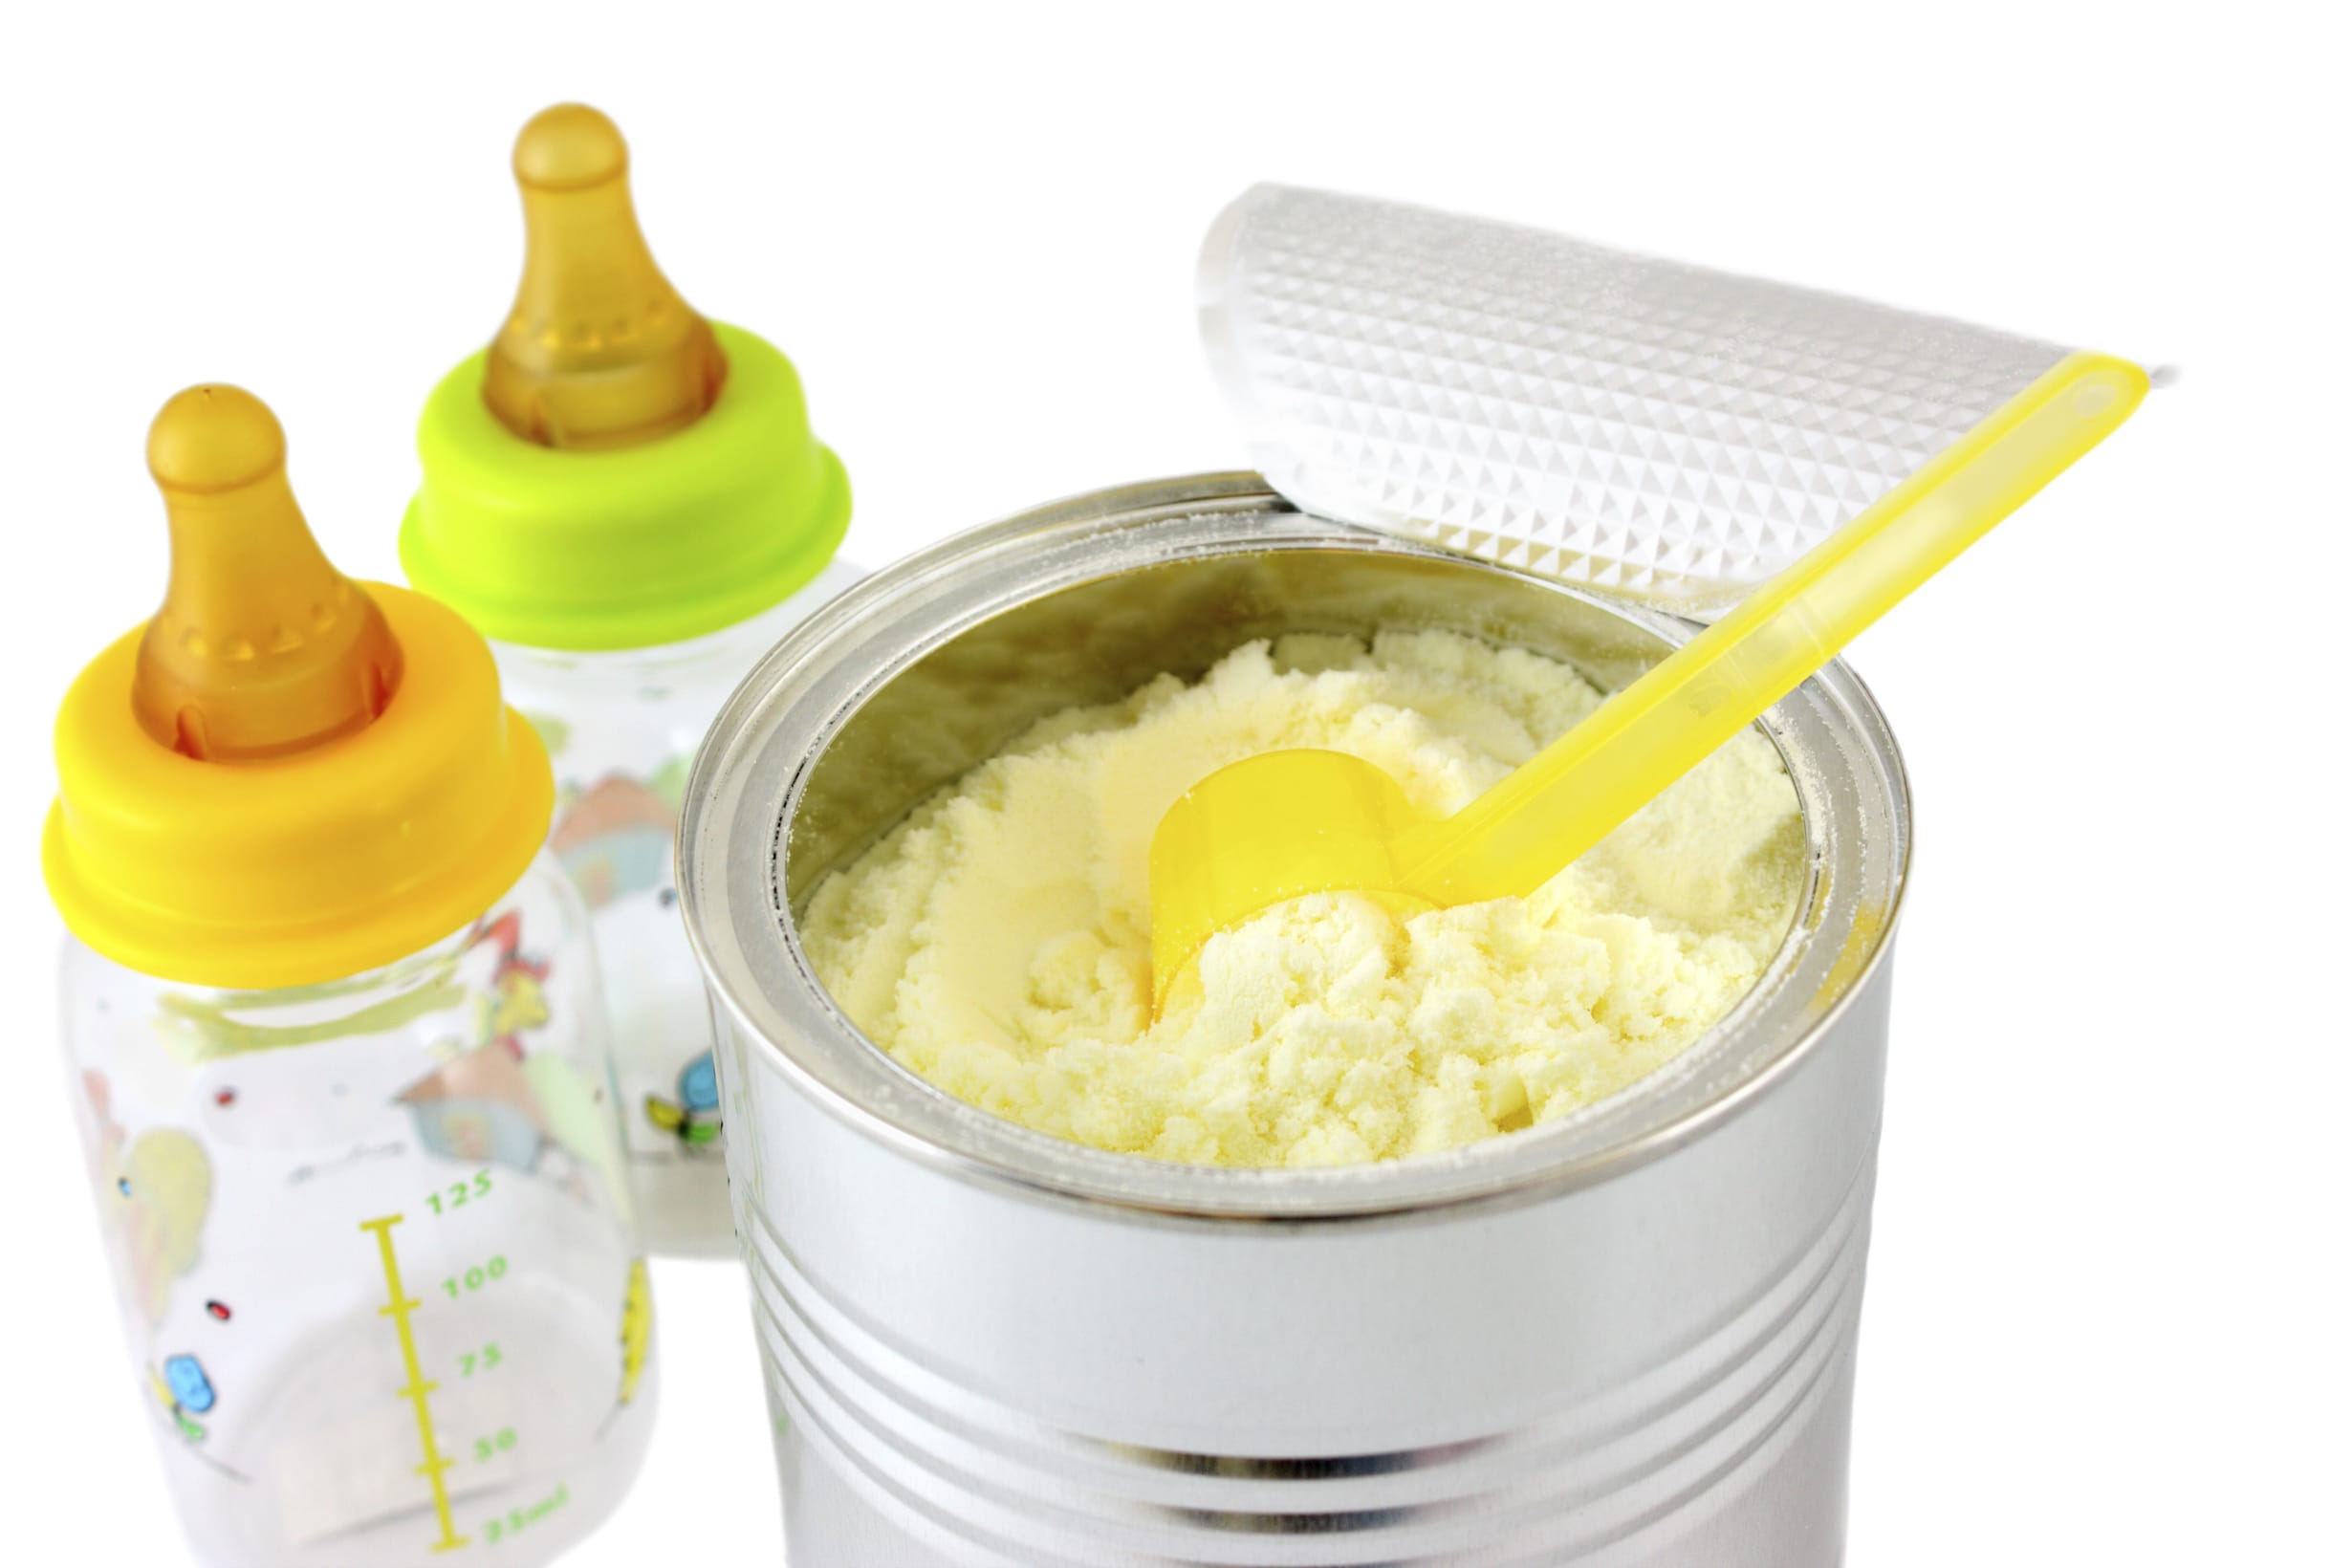 Caro prezzi latte in polvere: in Italia i prezzi più alti - Non sprecare